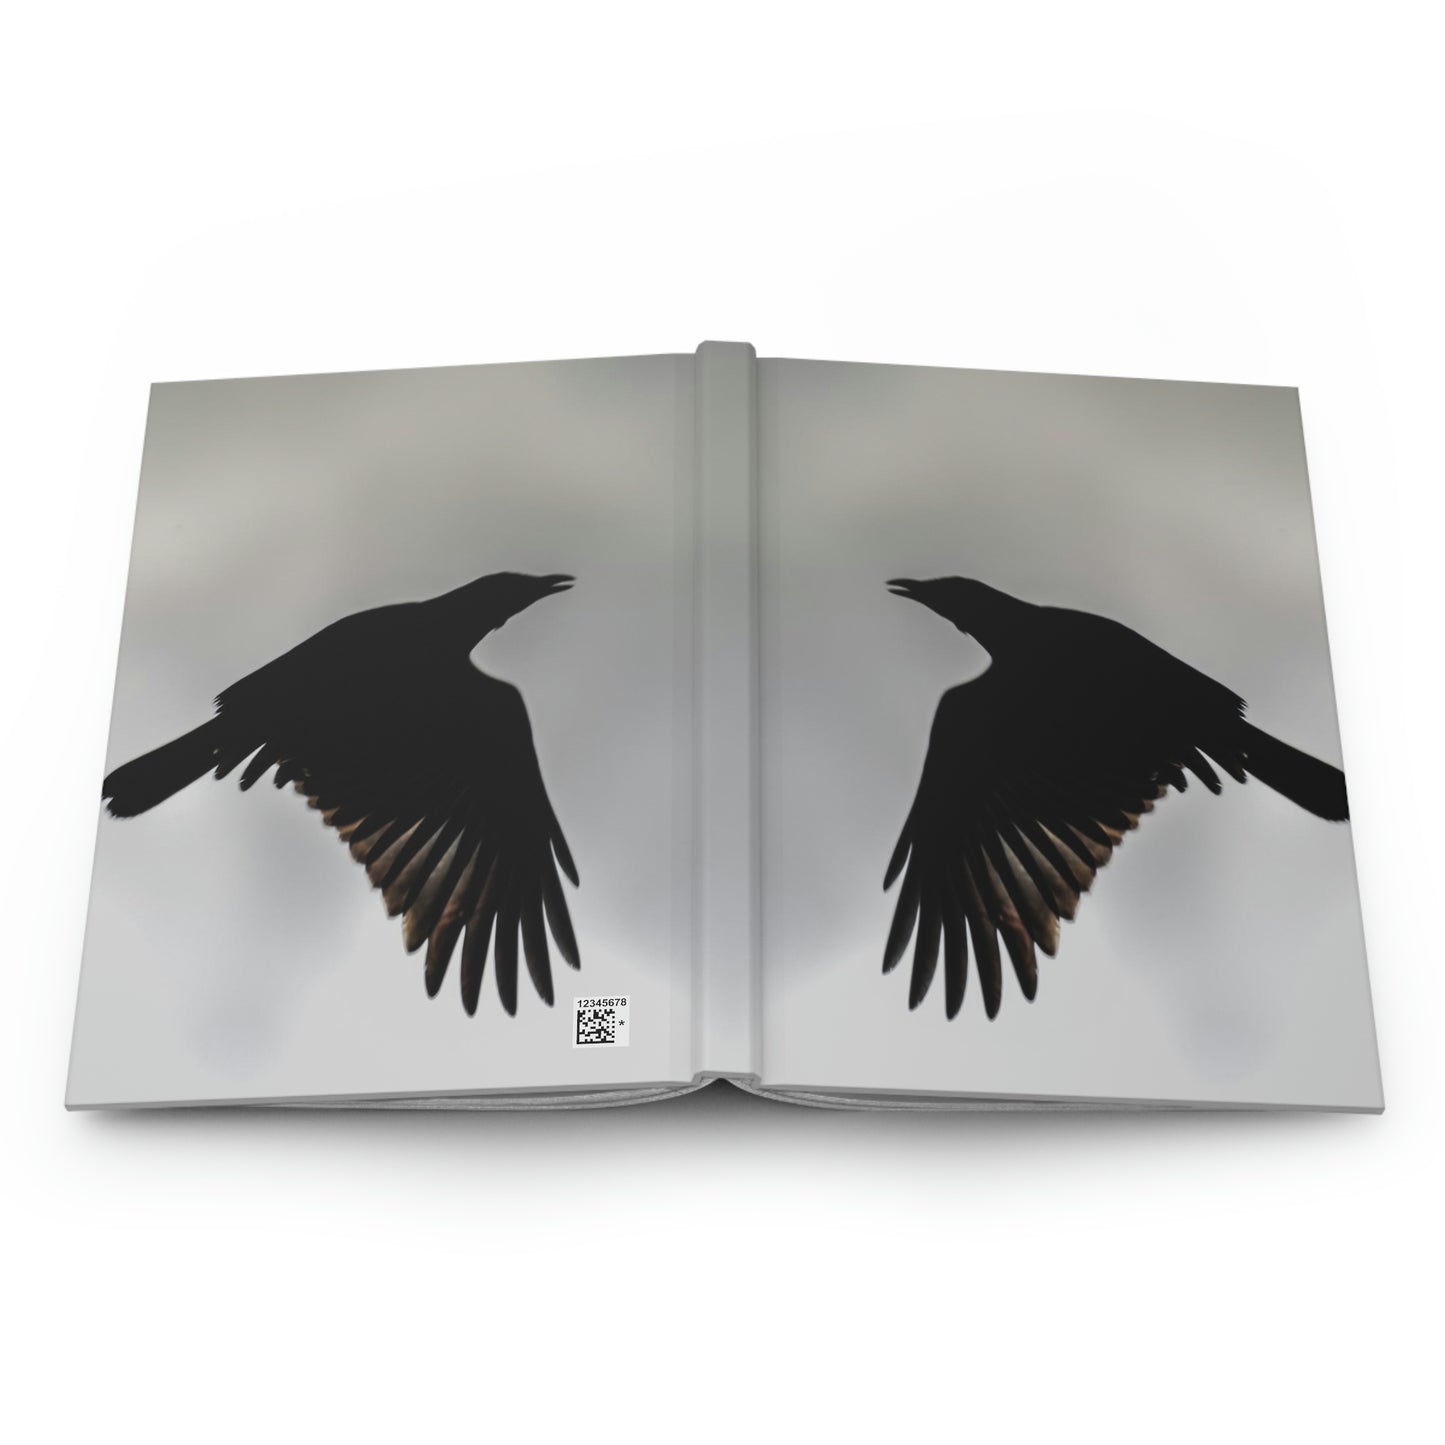 Gothic Bird Hardcover Journal Matte